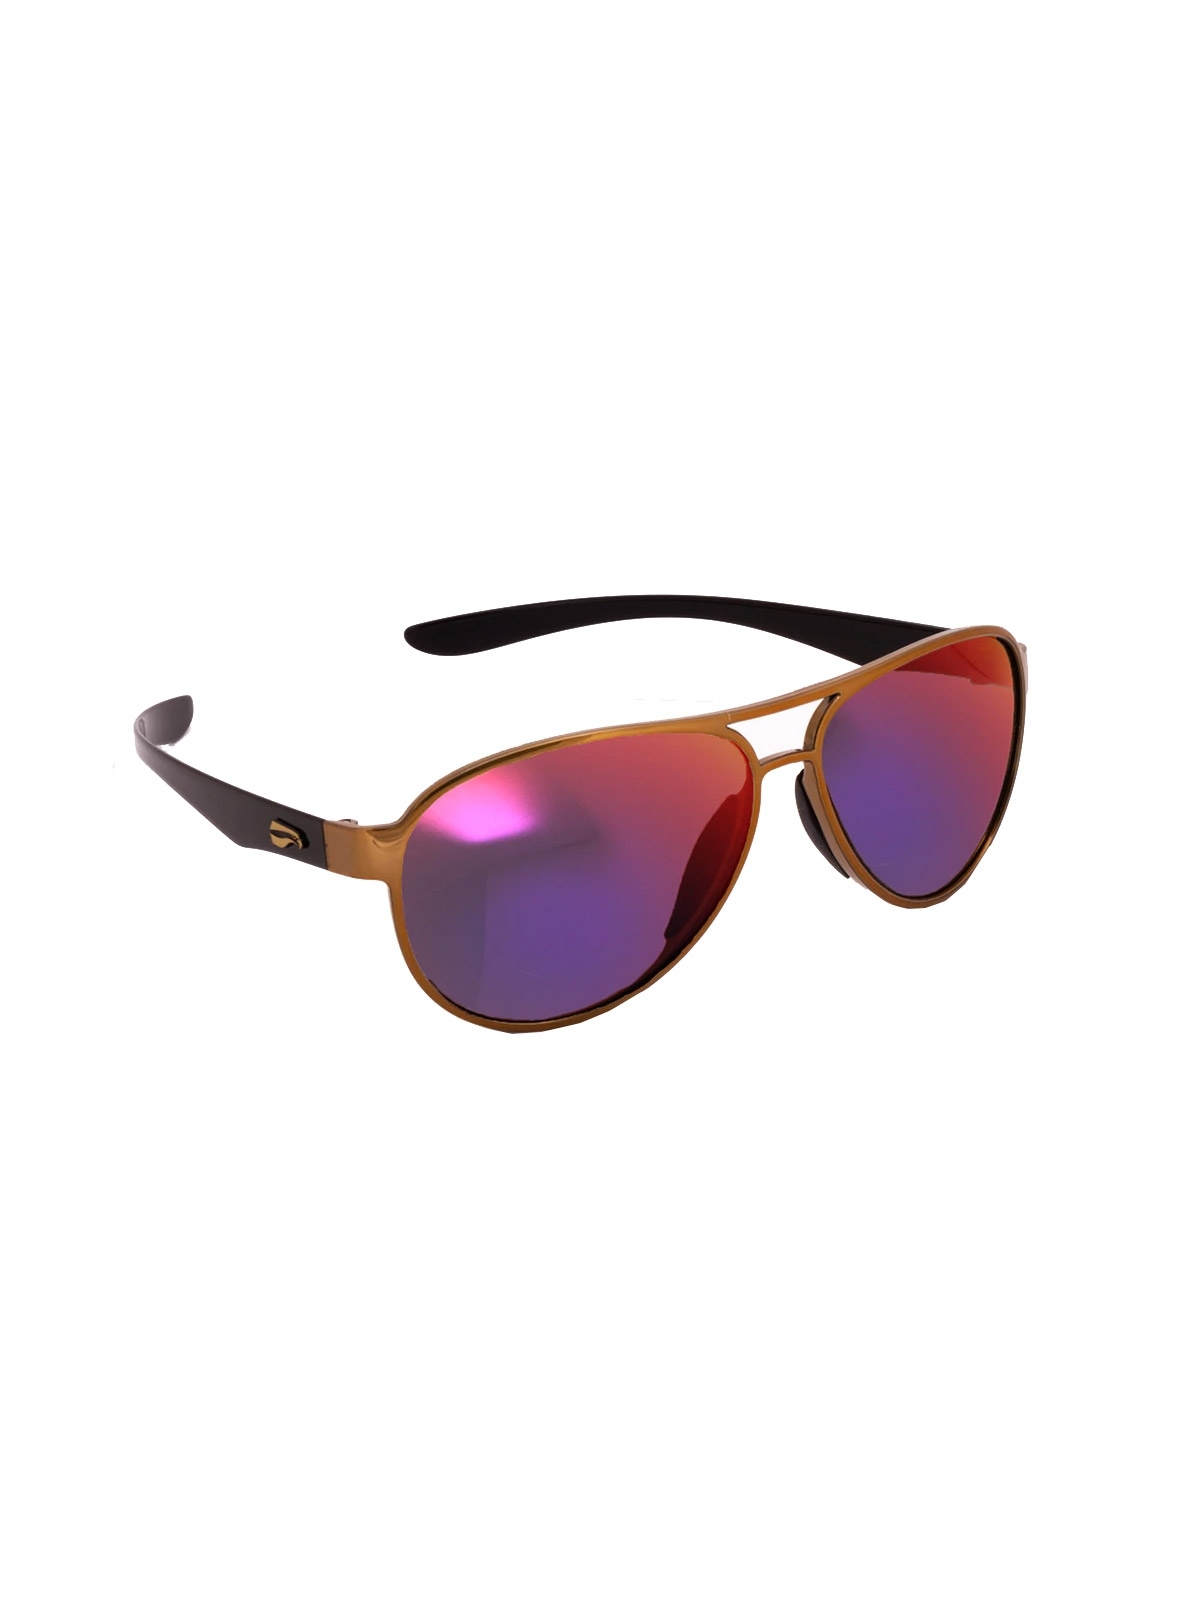 Flying Eyes Sonnenbrille Kestrel Aviator - Rahmen goldfarben mit schwarzen Bügeln, Linsen Sunset (verspiegelt)